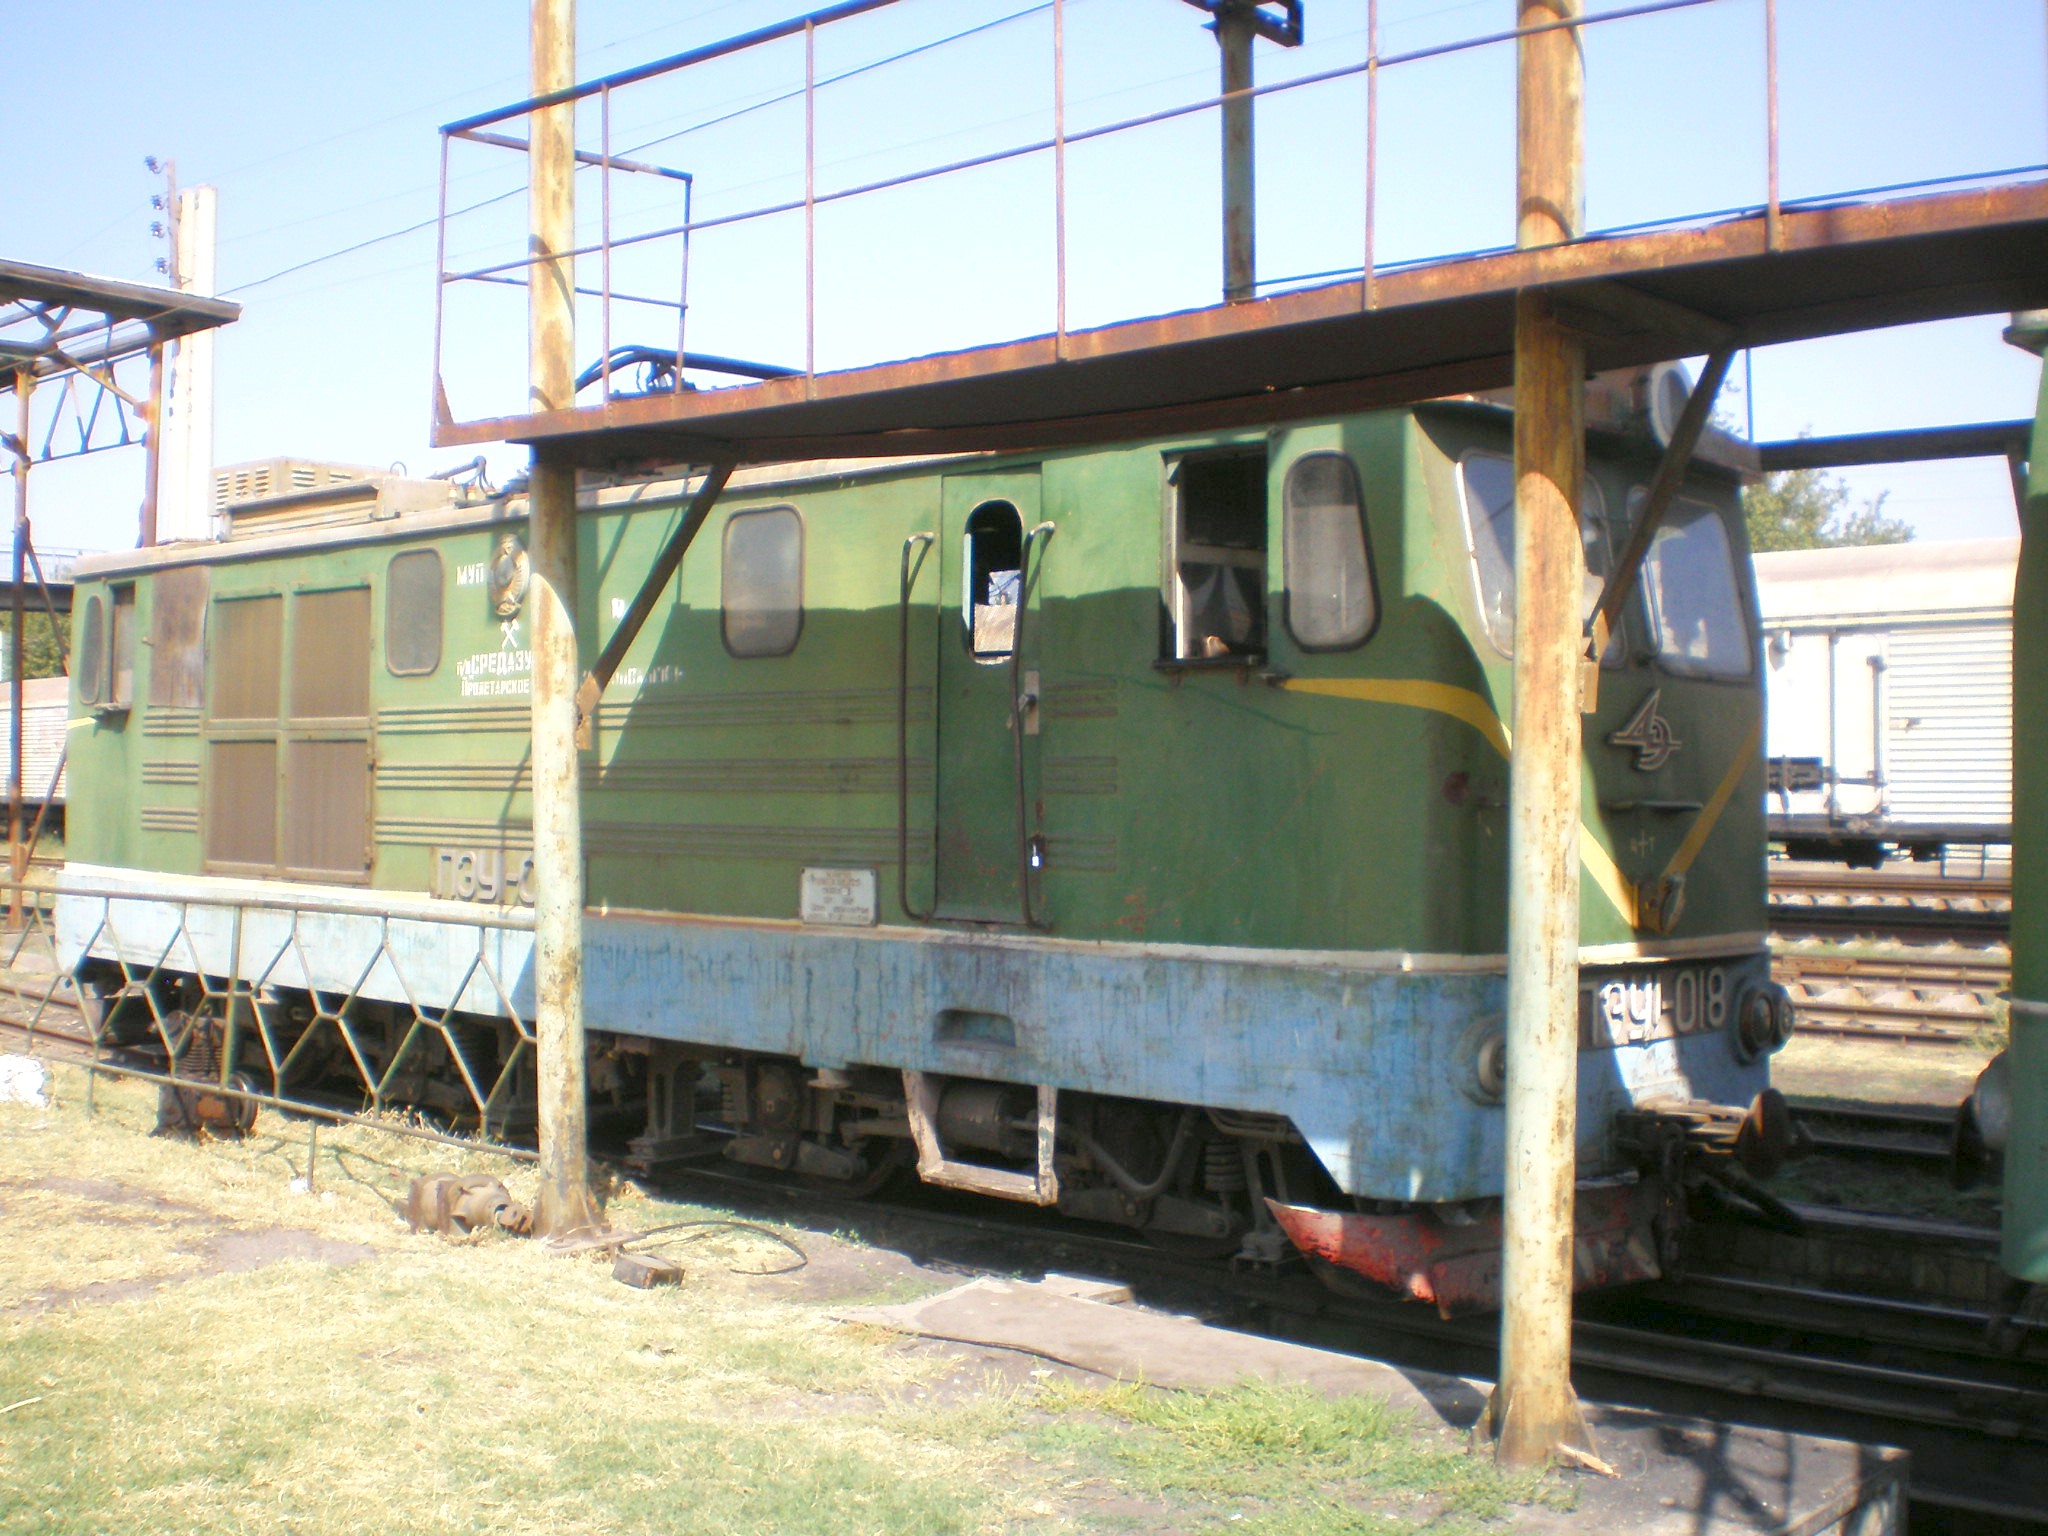 Сулюктинская узкоколейная железная дорога  —  фотографии, сделанные в 2008 году (часть 2)